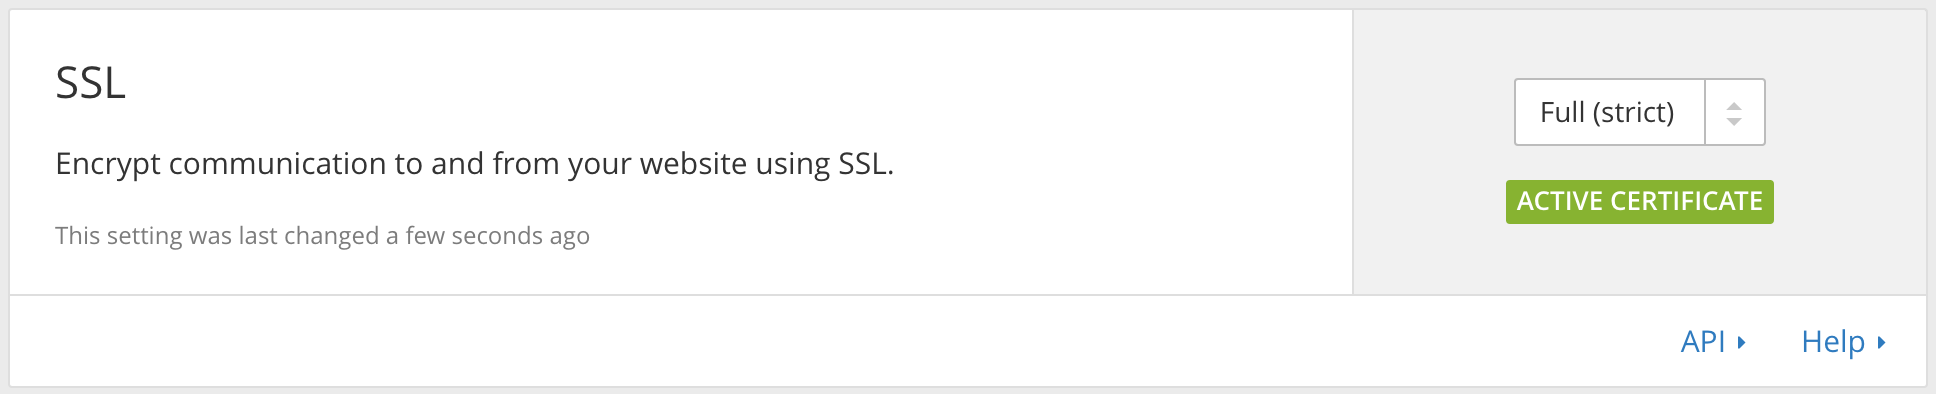 將 SSL 改為 Full(strict)